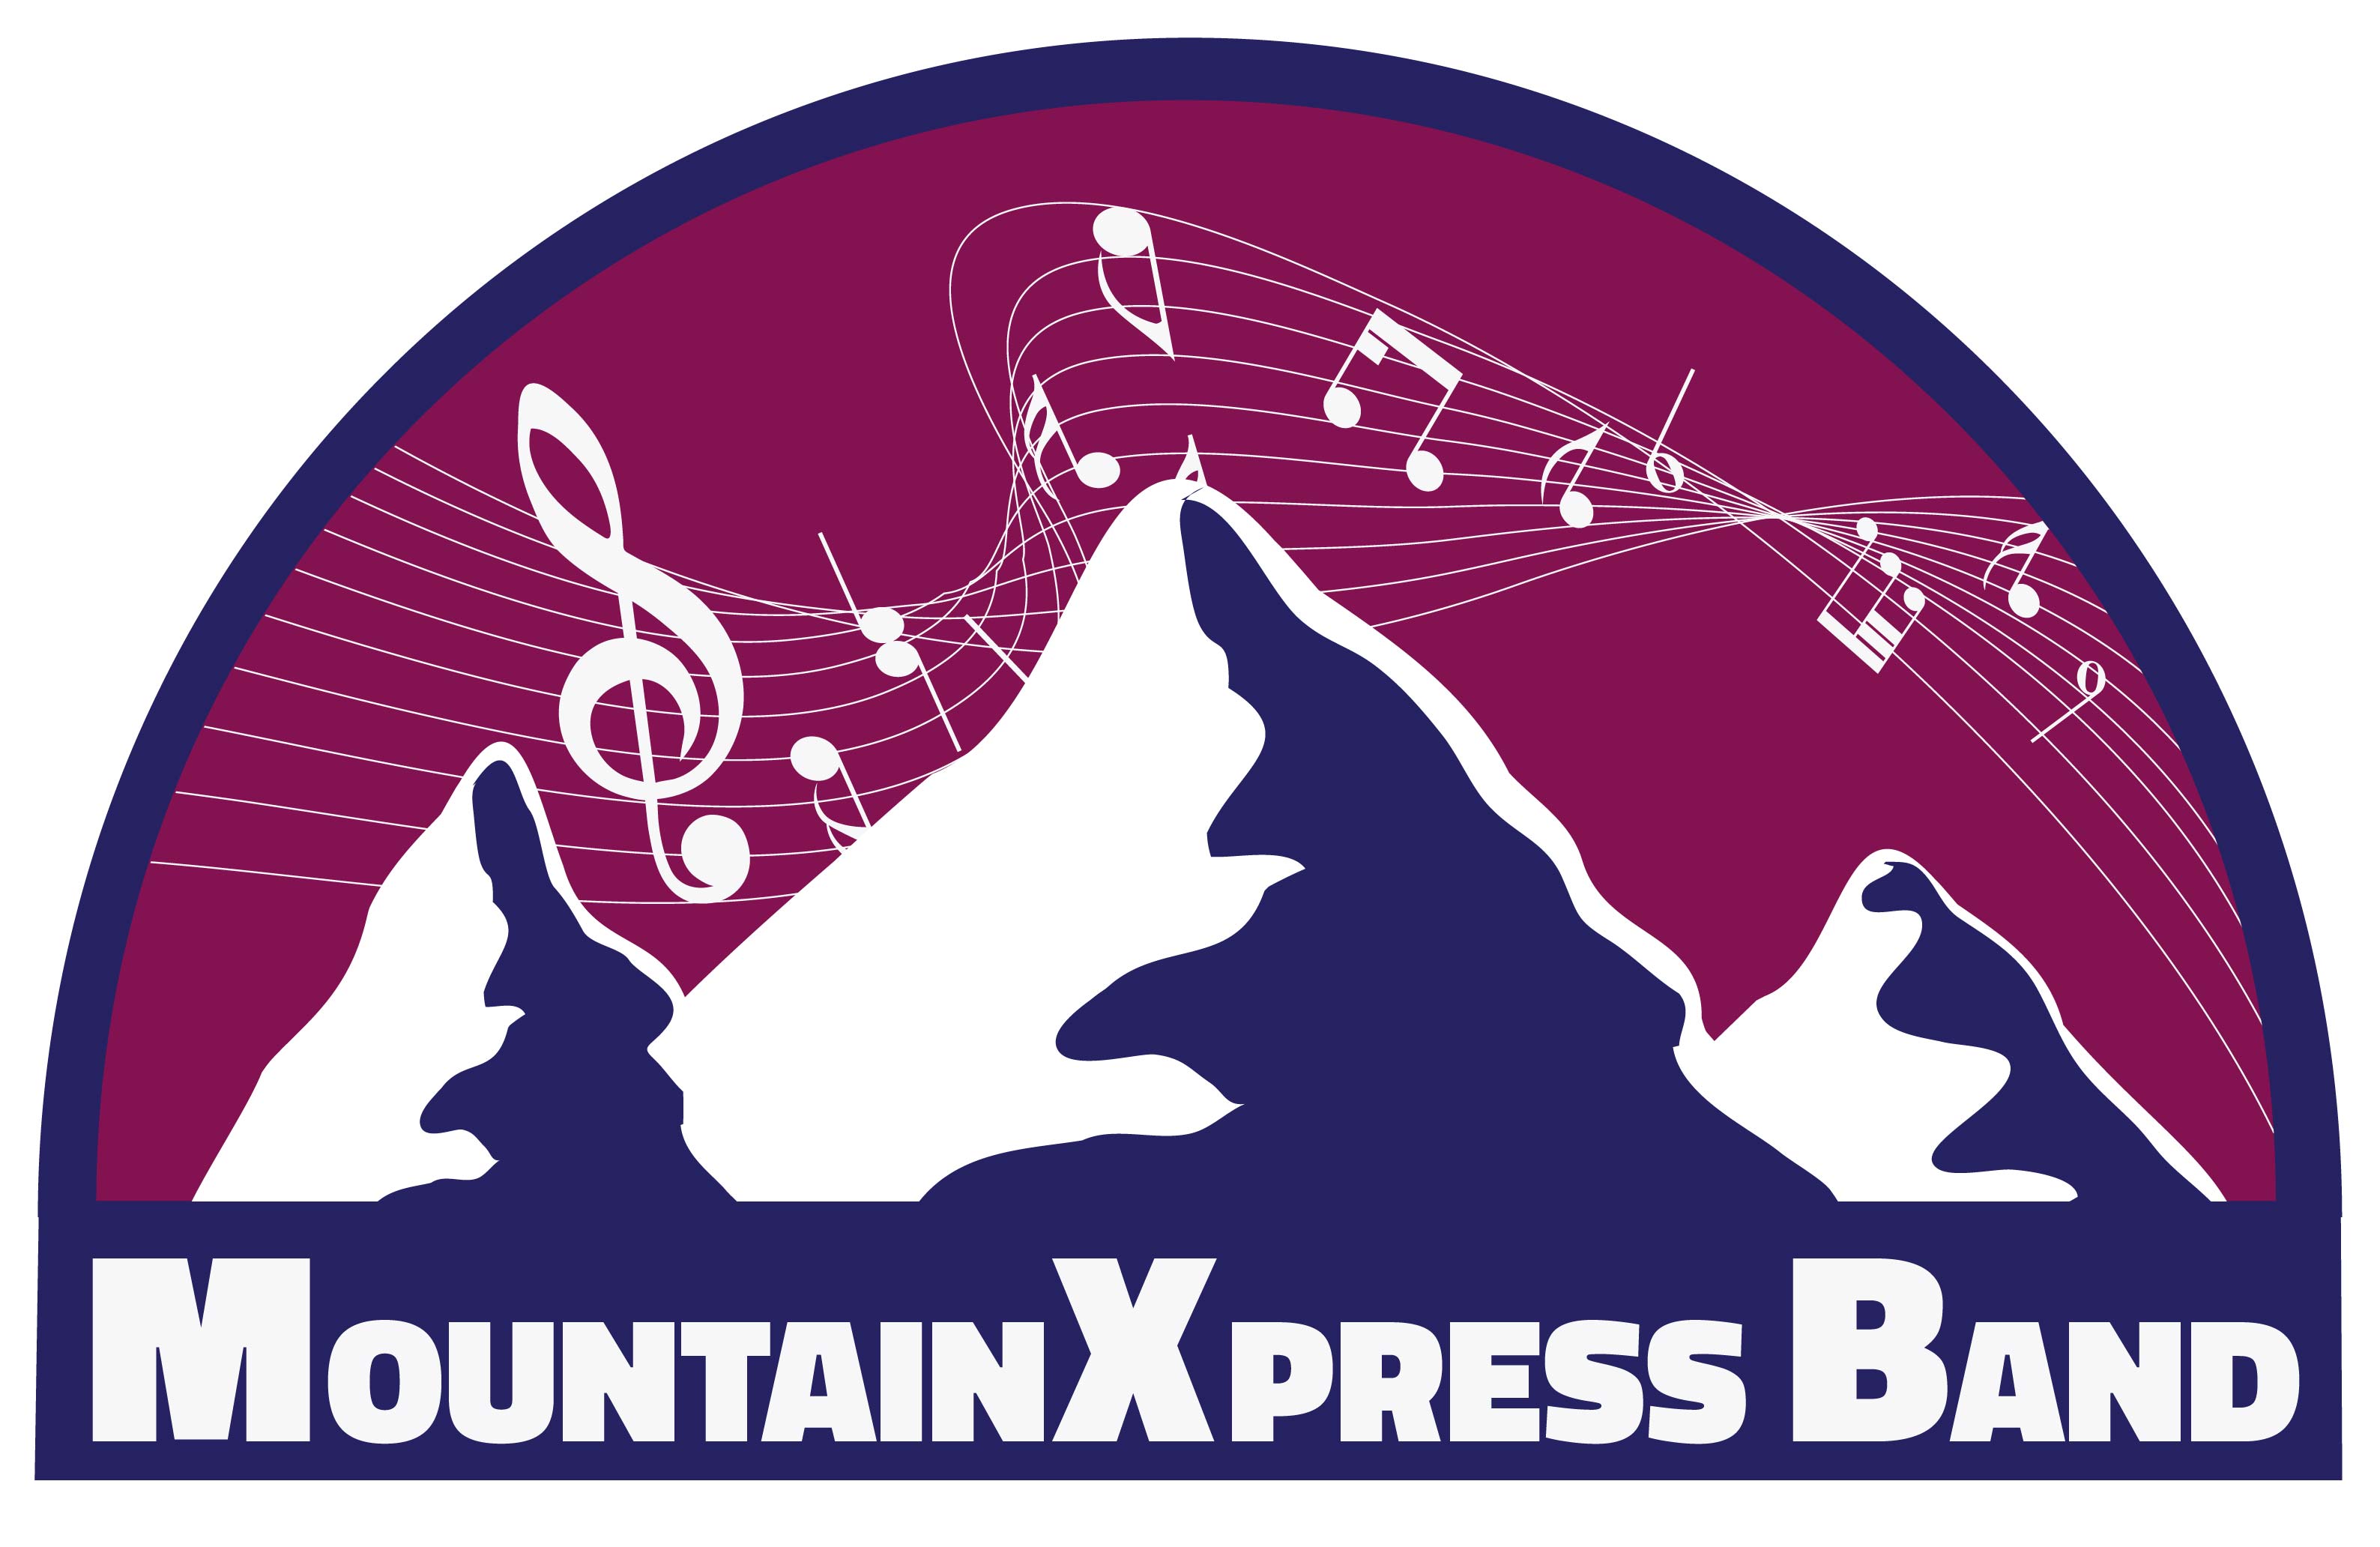 
				
				
				
				
				MountainXpress 
		
		
		
		
		